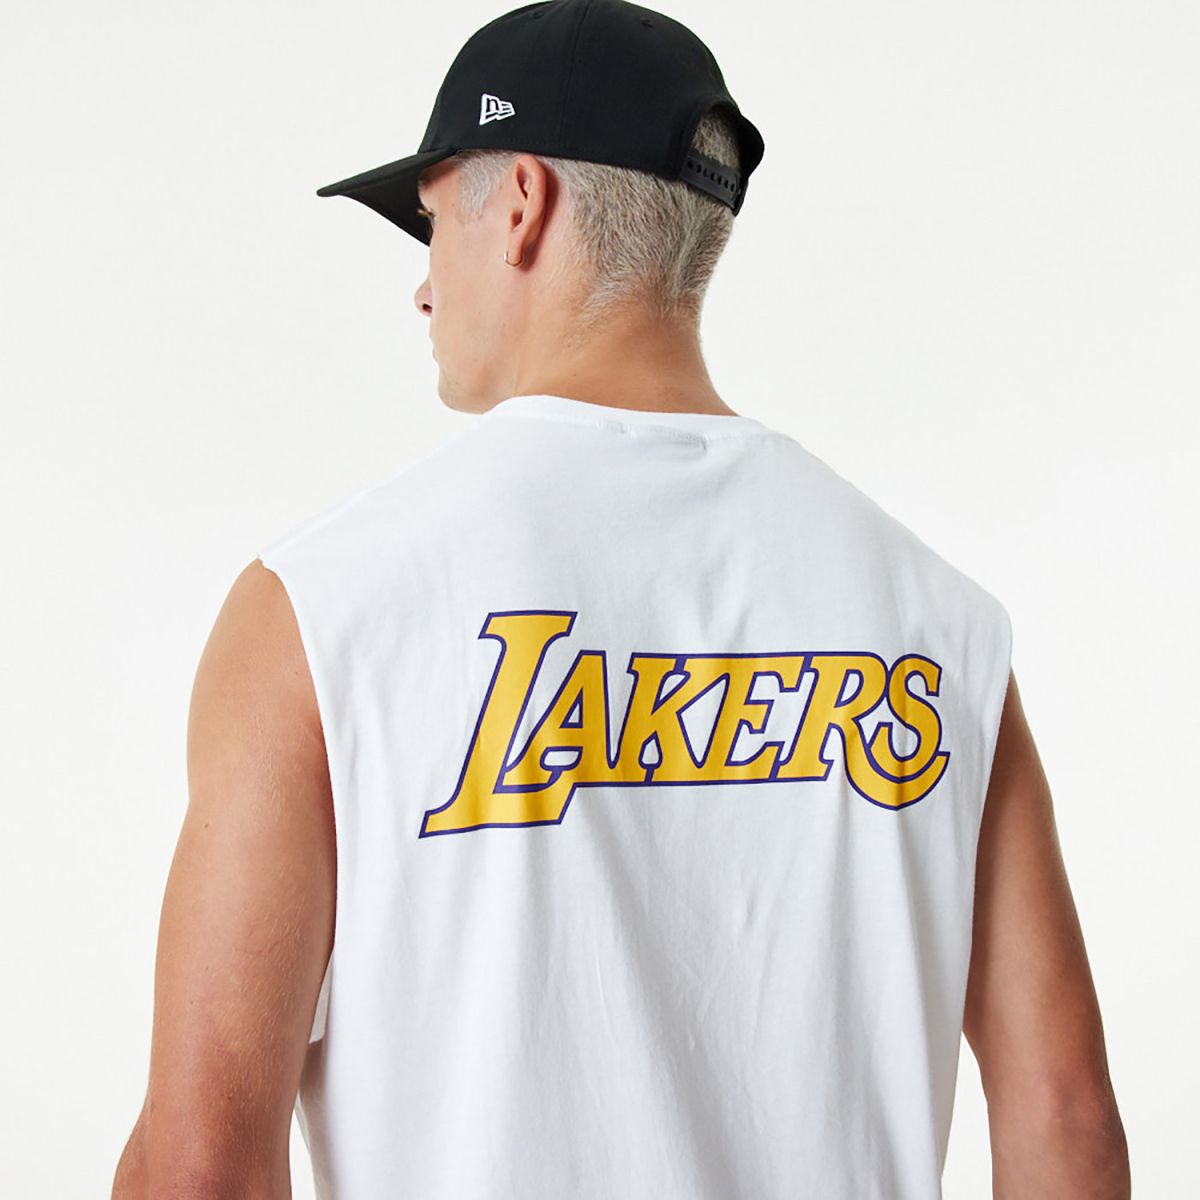  גופיית לוגו Lakers של NEW ERA